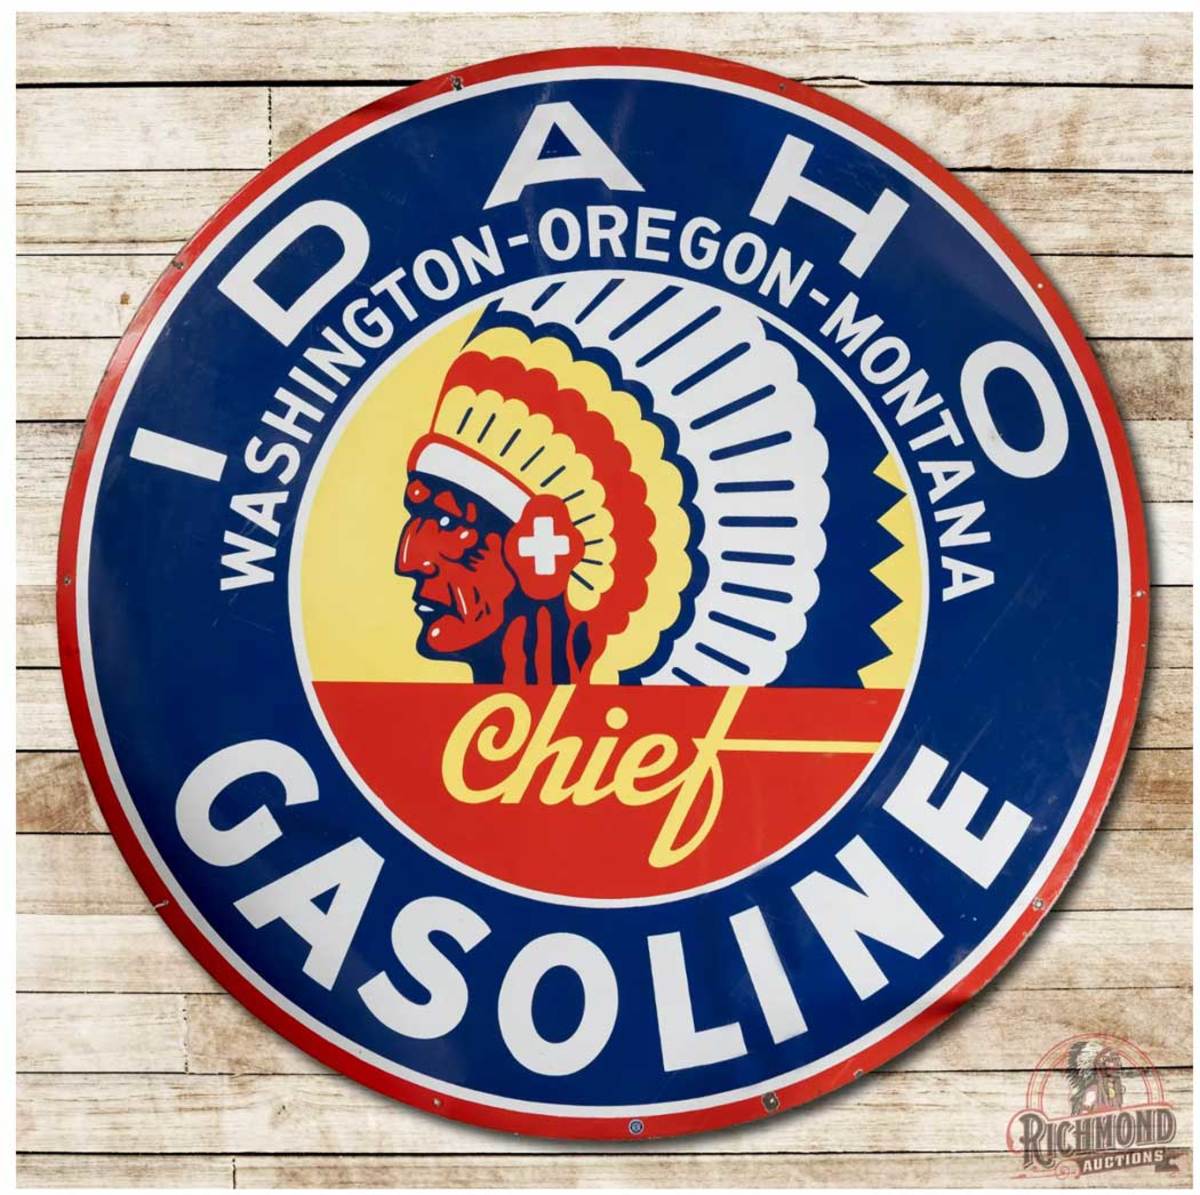 Idaho Gasoline double sided porcelain sign